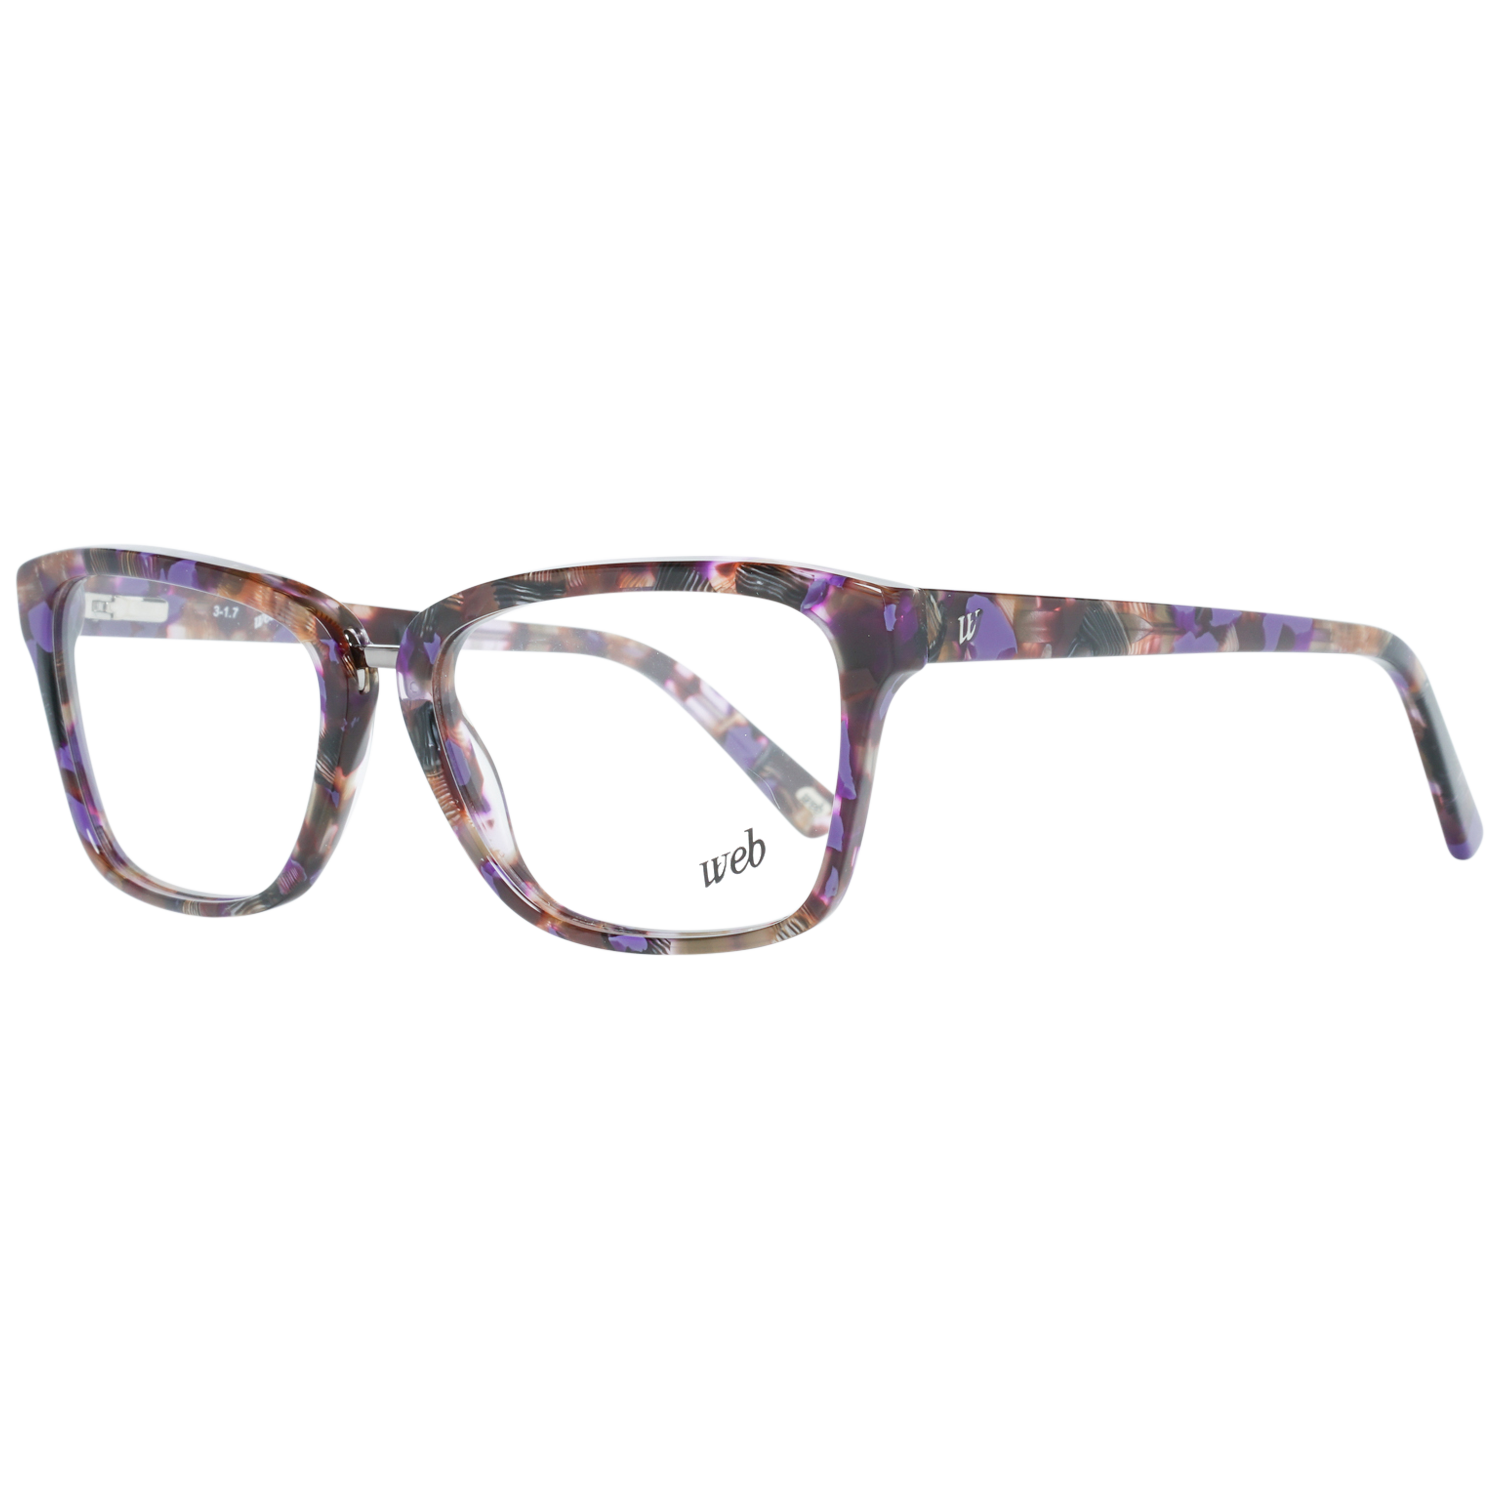 Web Frames Web Glasses Optical Frame WE5229 081 53 Eyeglasses Eyewear UK USA Australia 